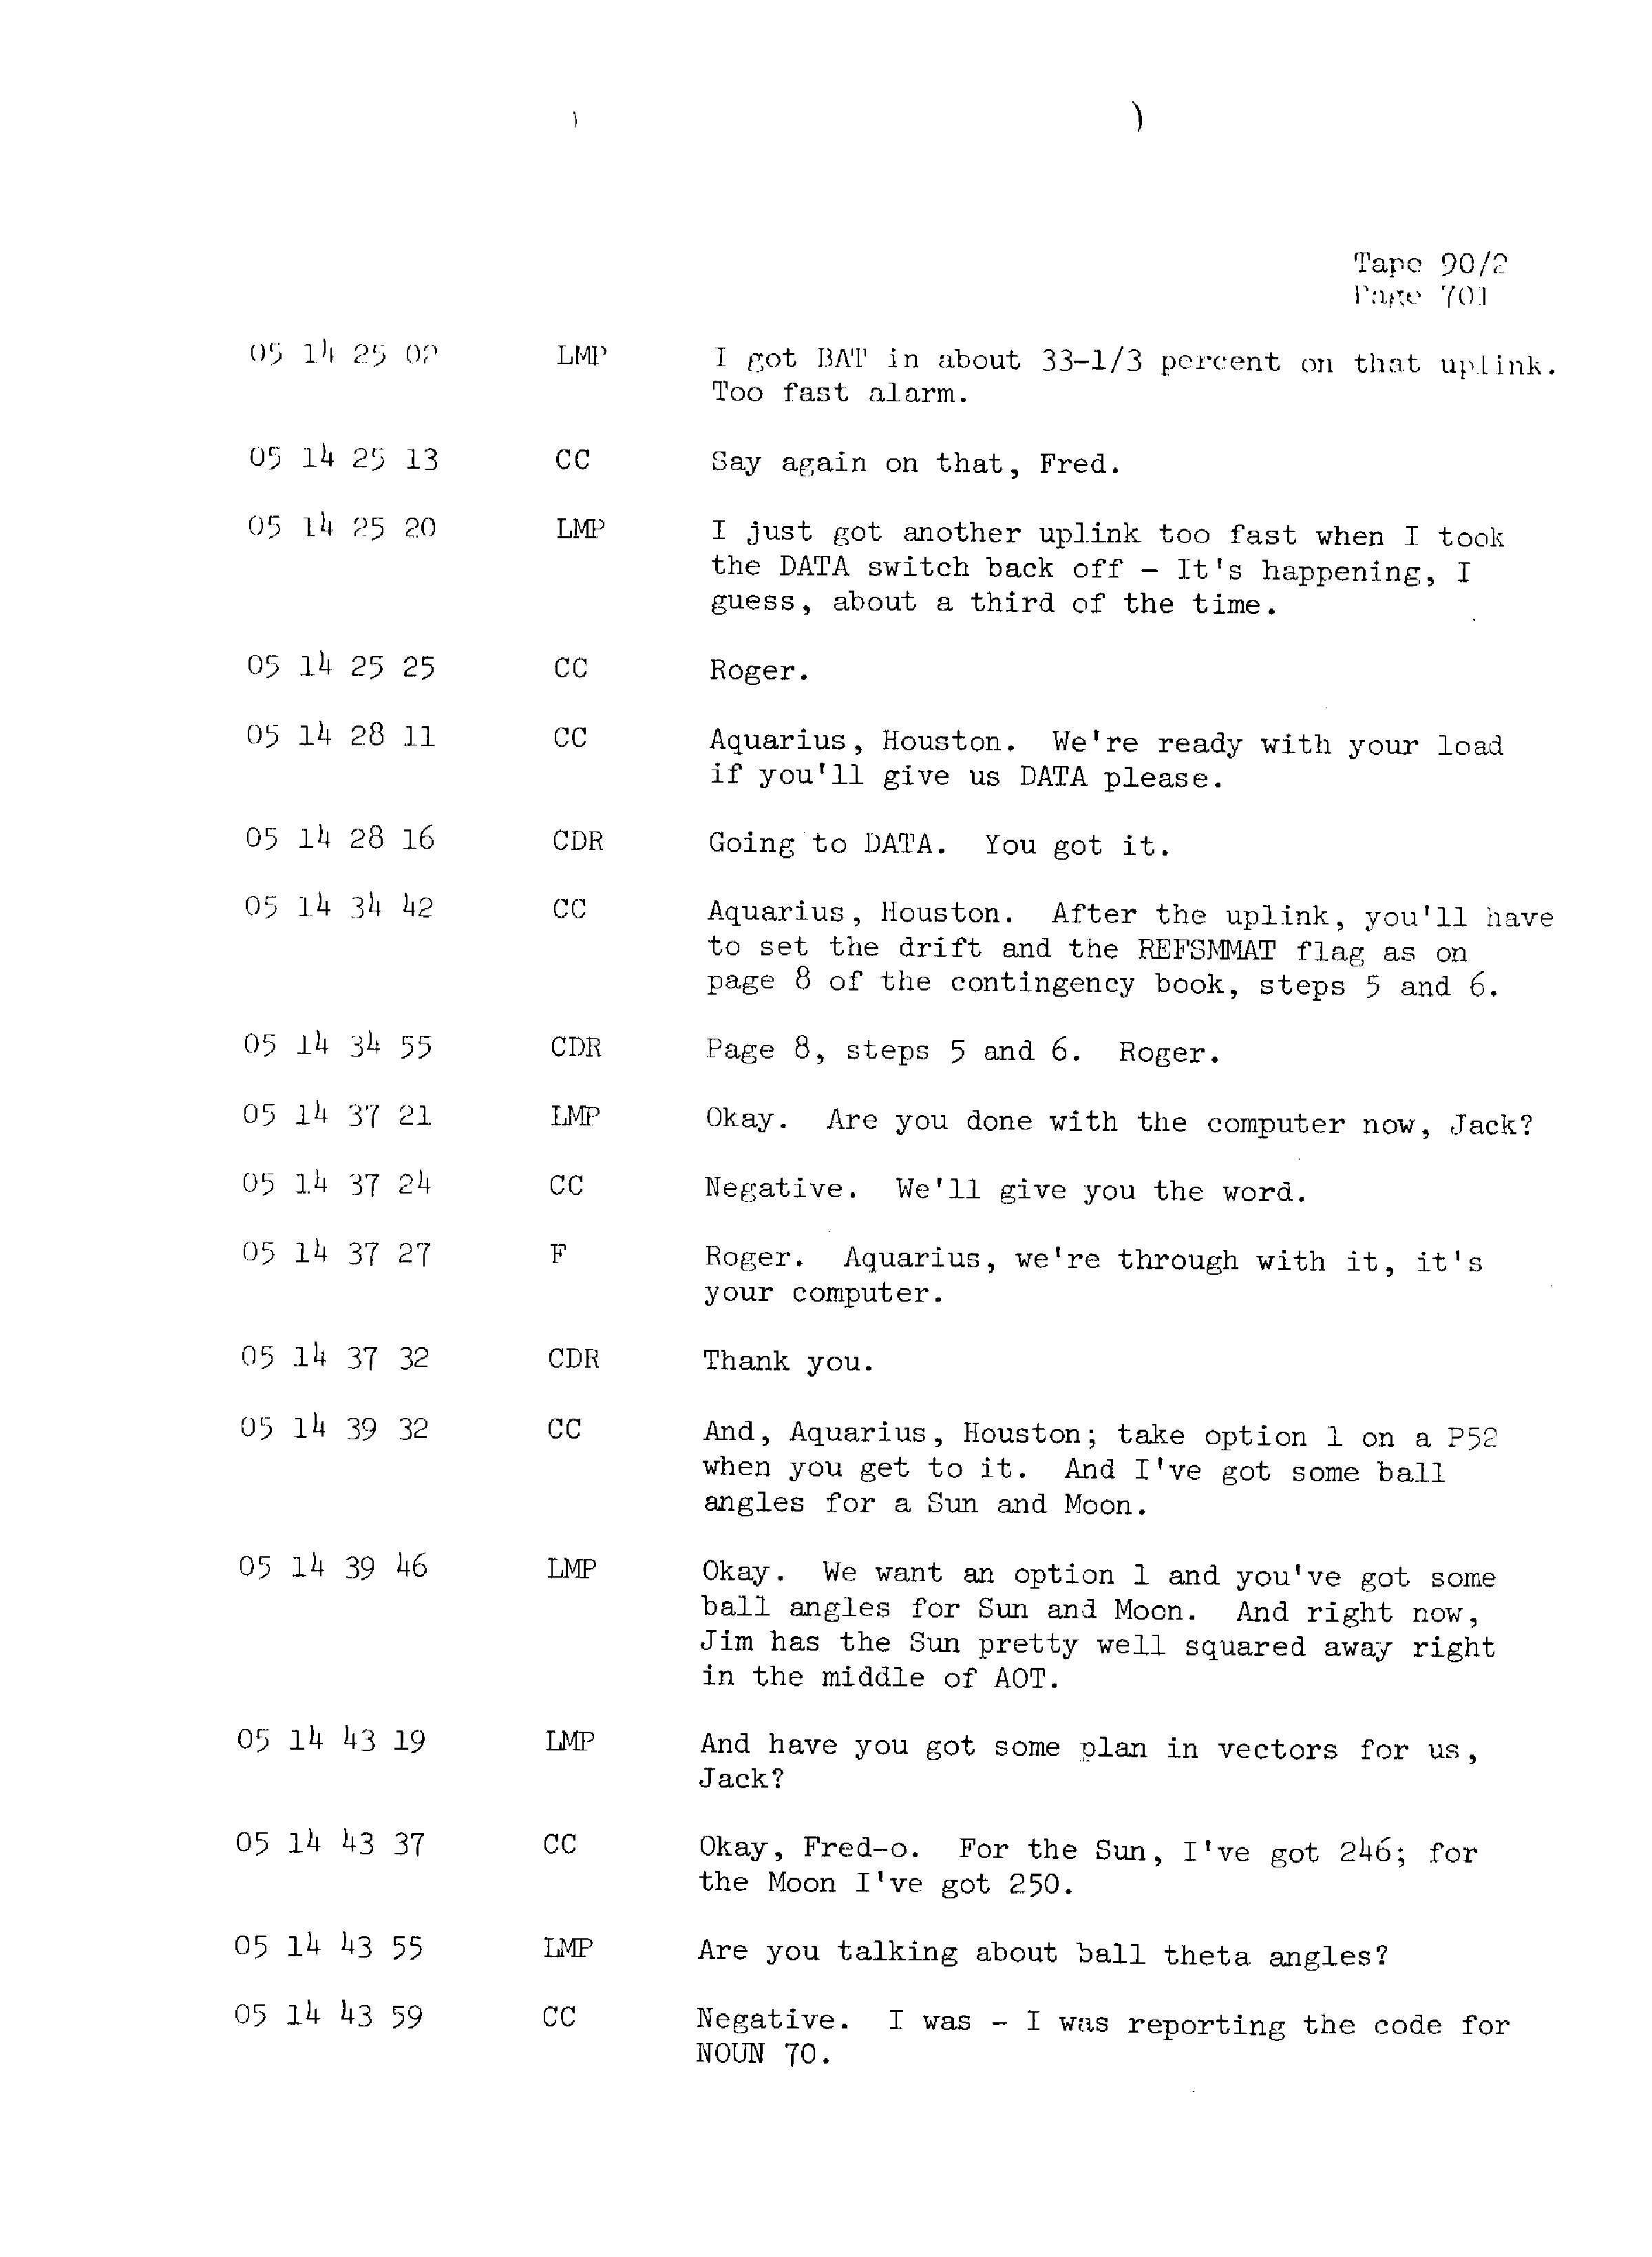 Page 708 of Apollo 13’s original transcript